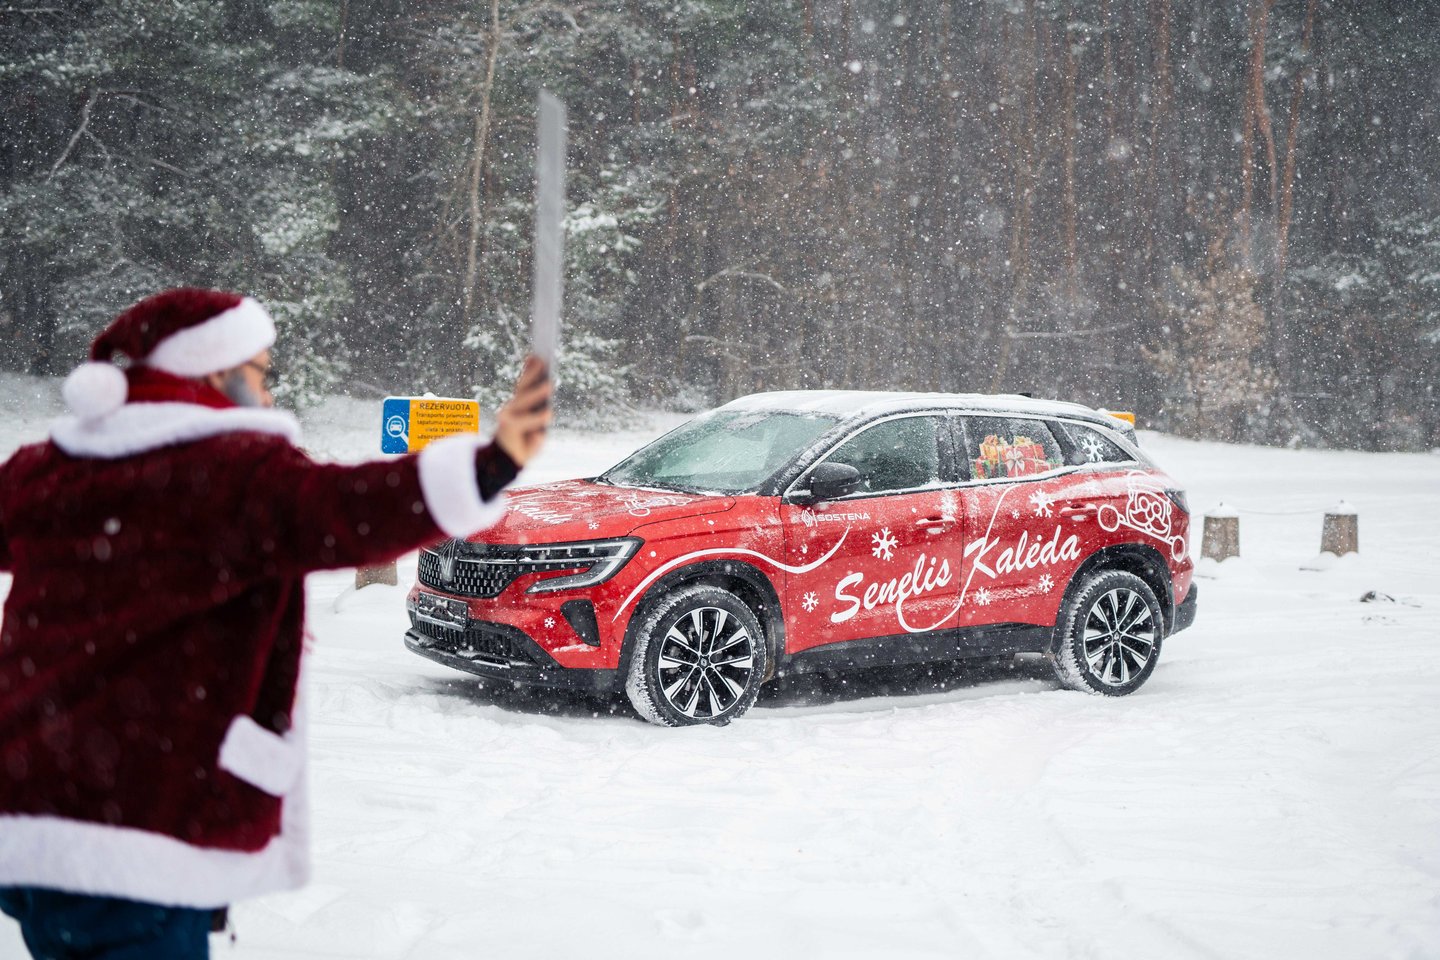 Senelis Kalėda Lietuvoje bus atpažįstamas išskirtiniu automobiliu ir numeriais.<br>Justino Kygos nuotr.